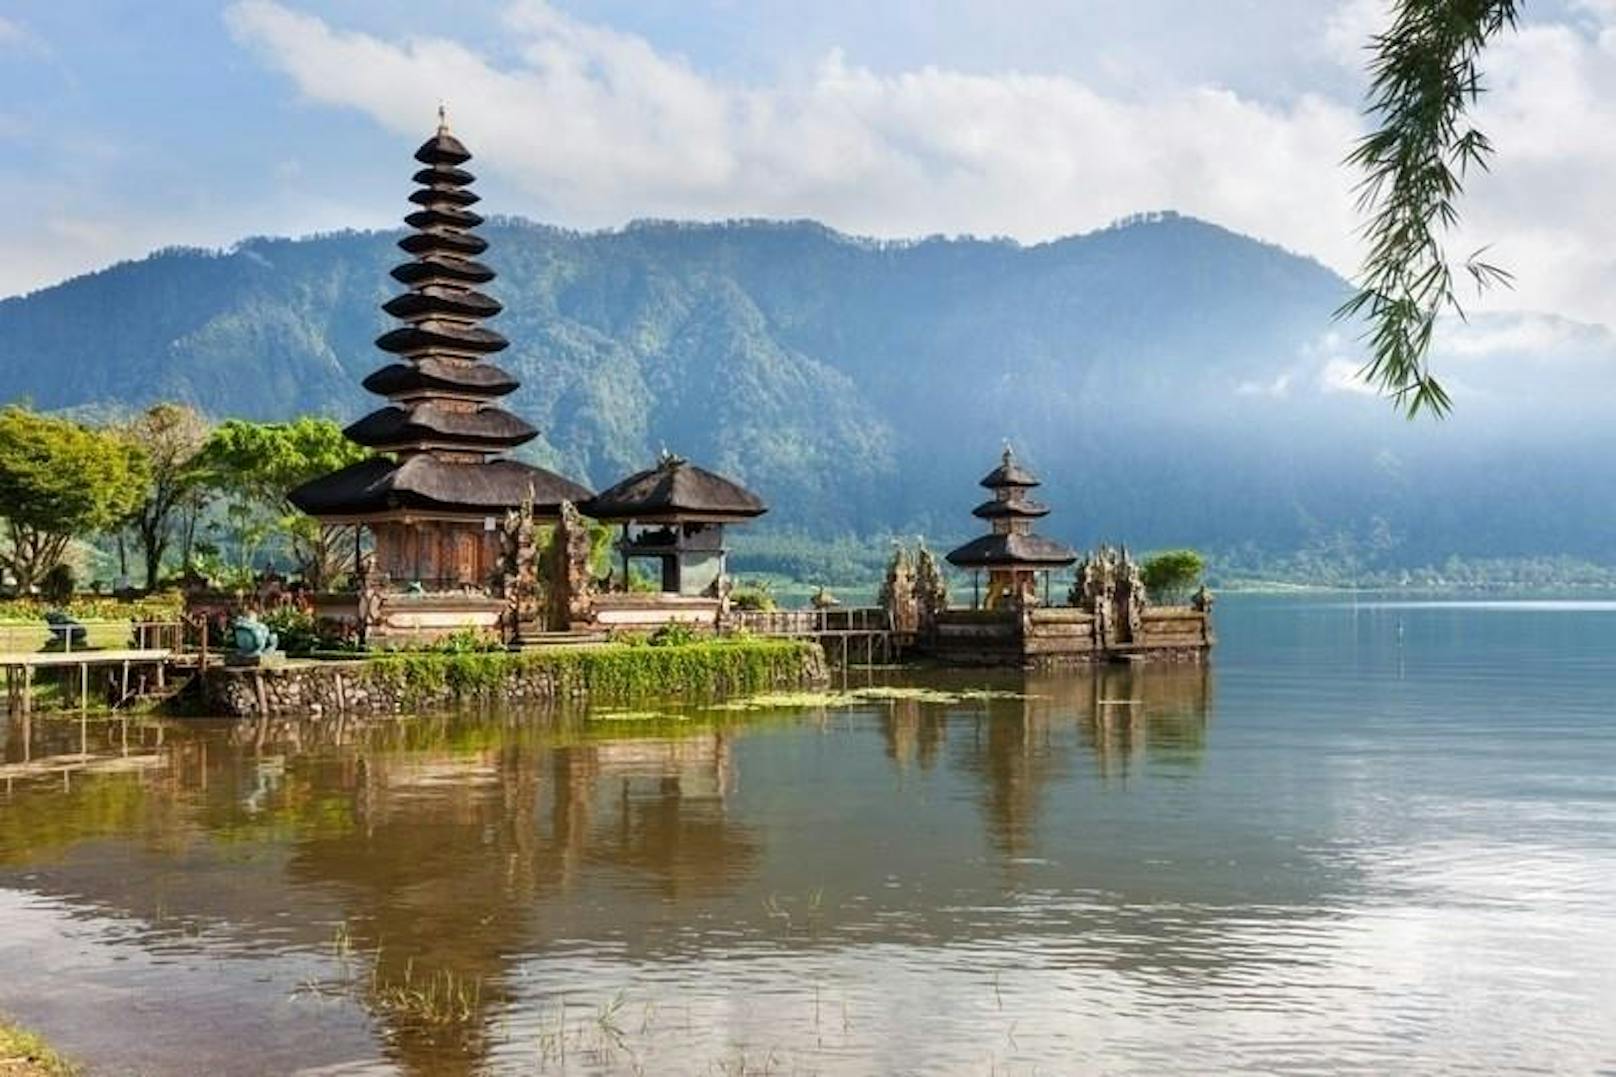 <b>Indonesien</b> ist ein fantastischer, geheimnisvoller Ort. Ihr könnt dort kristallklare Stände genießen, Insel-Hopping betreiben, dichte Wälder sehen und einen Kulturshock erleben, von dem ihr noch lange erzählen könnt. Vom Chaos Jakartas bis zum türkiesen Meer an den Stränden Balis gibt es viel zu entdecken.